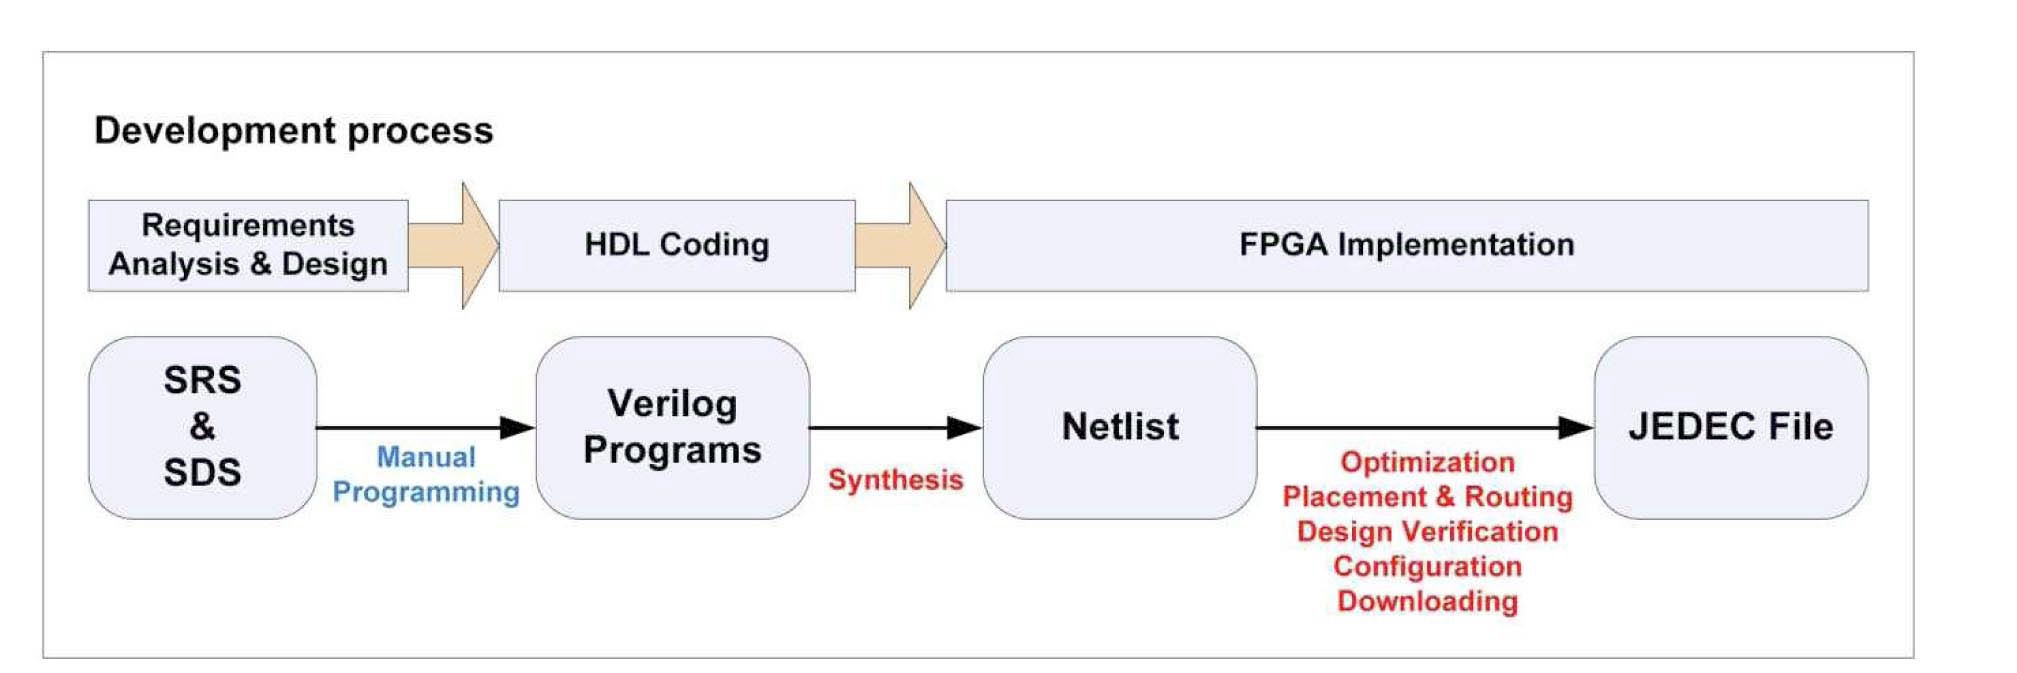 An RPS Software Development Process using FPGA